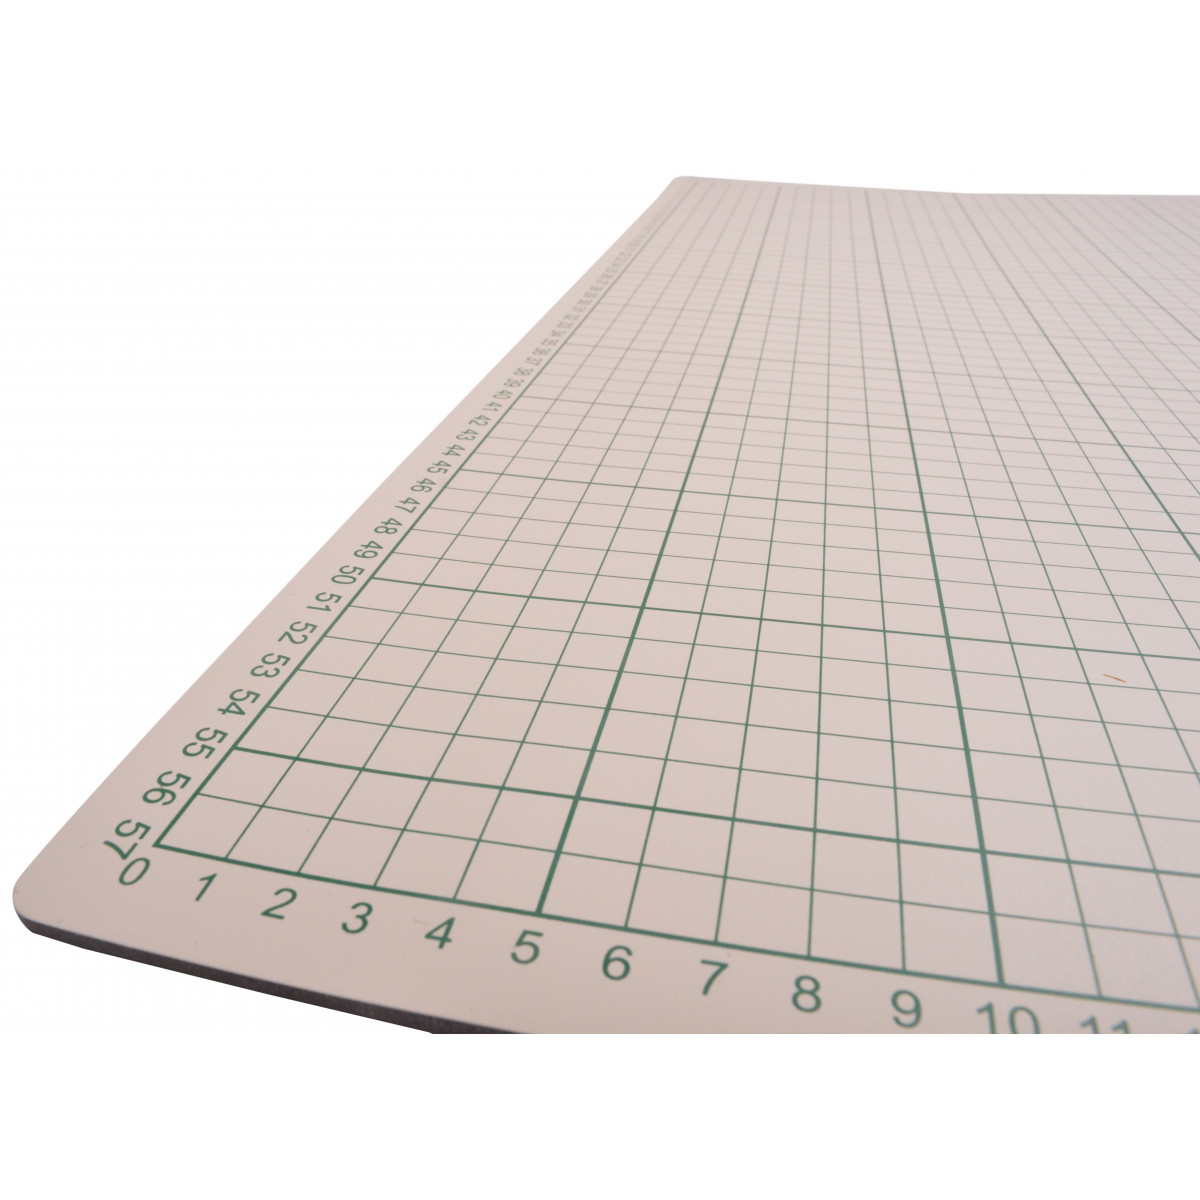 cutting-mat-size-60x90cm-thickness-3mm-1-pc-ritohobby-co-uk